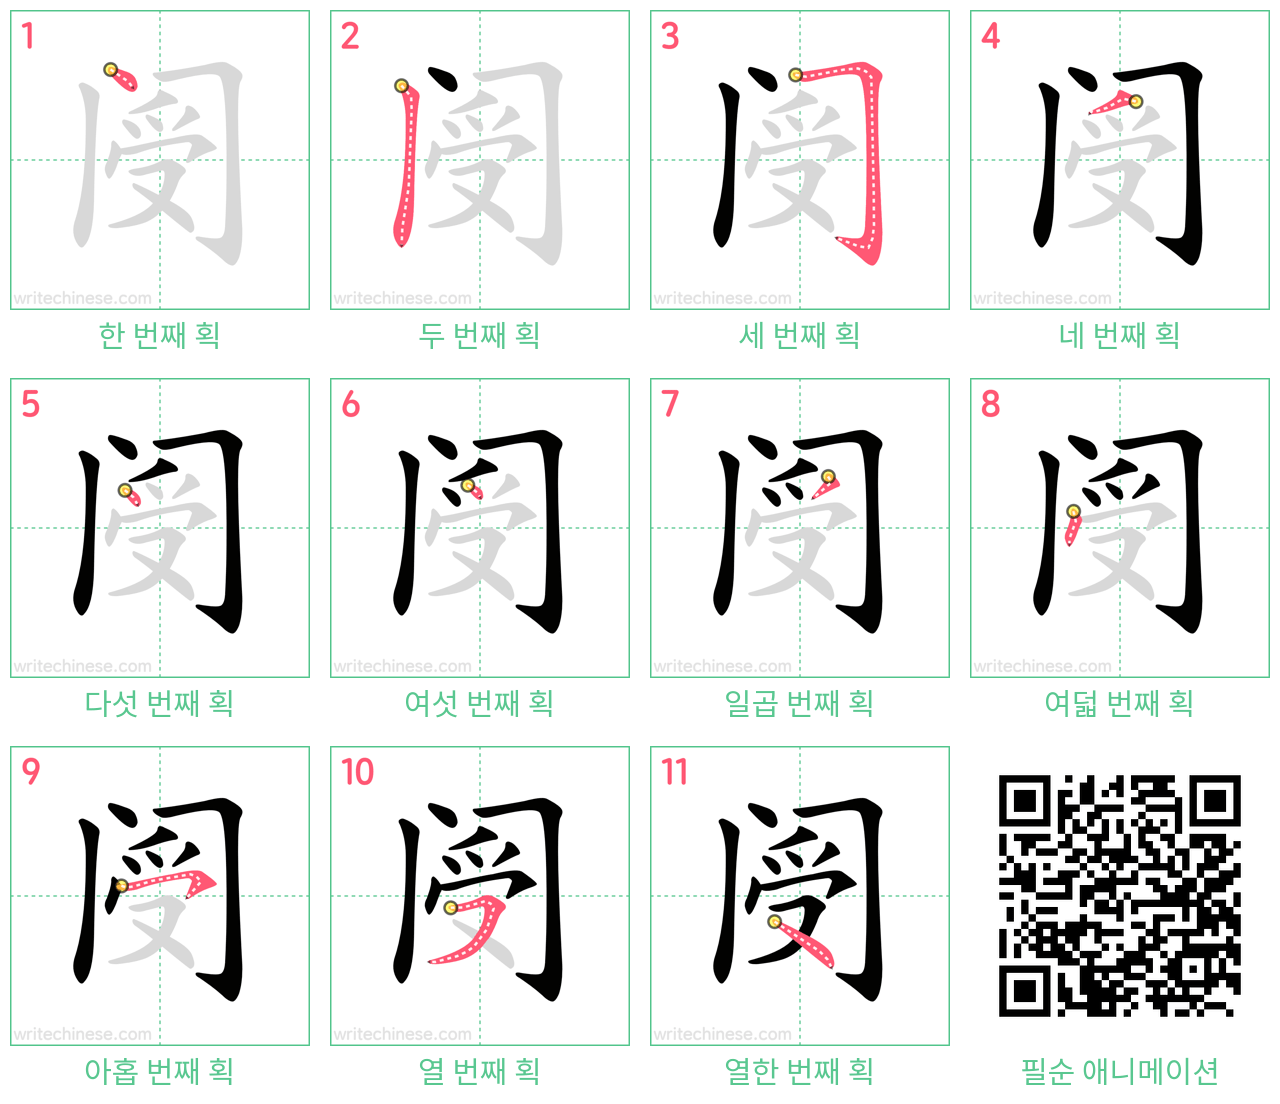 阌 step-by-step stroke order diagrams